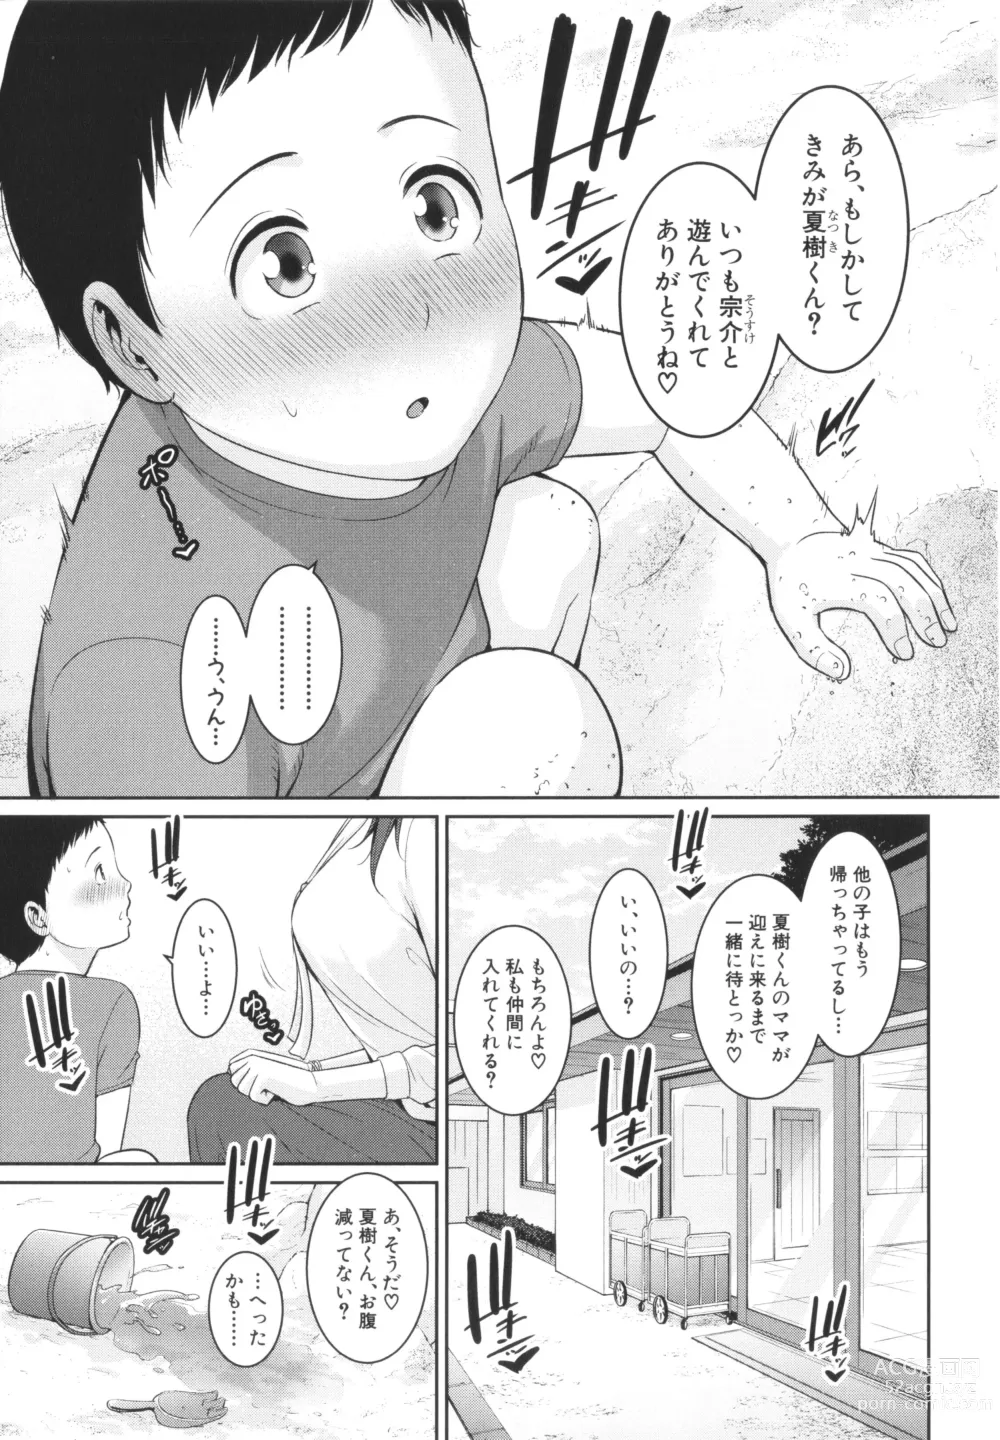 Page 191 of manga Zokuzoku Tomodachi no Hahaoya